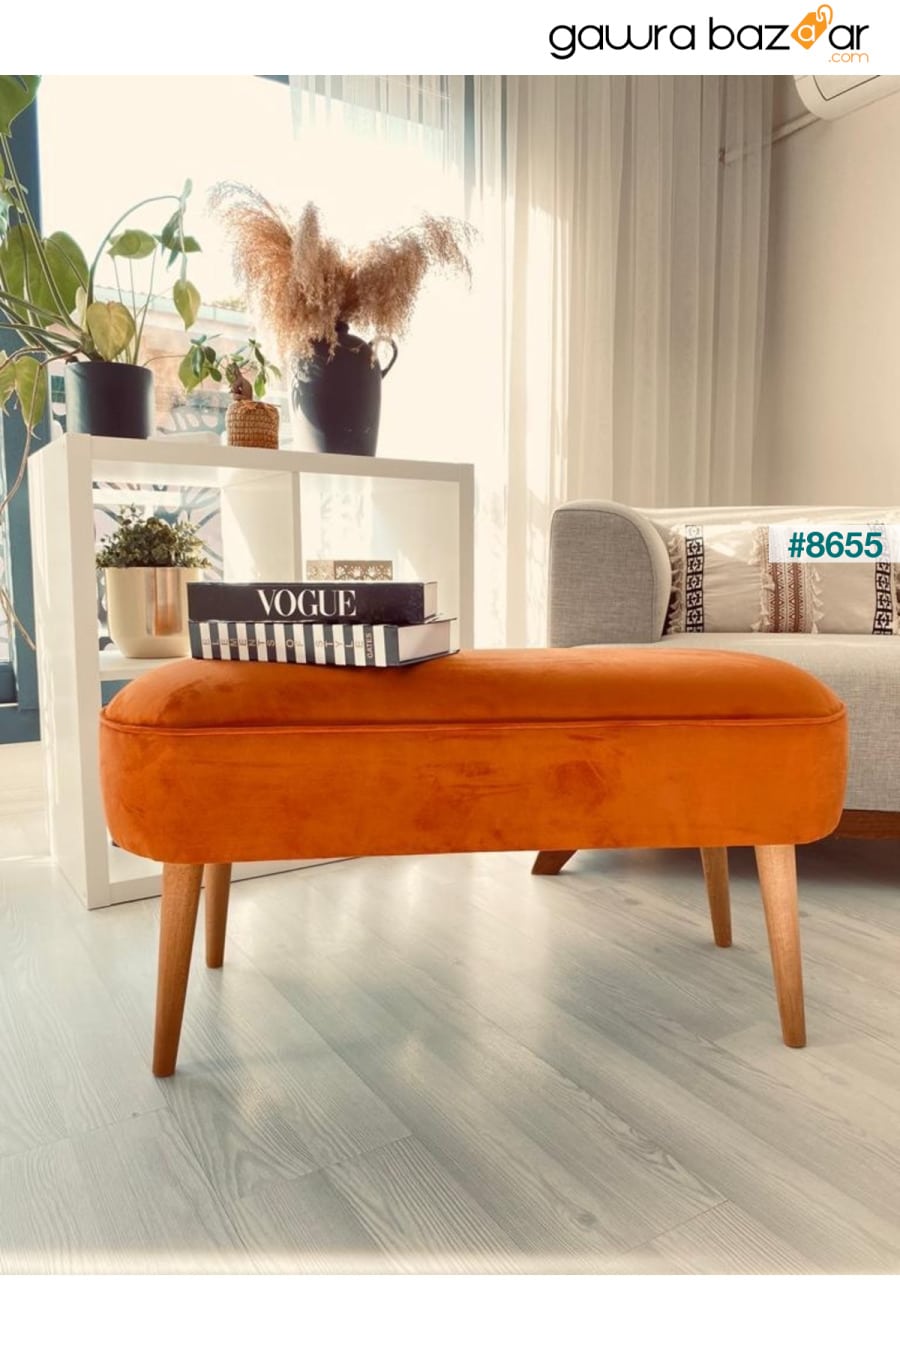 مقعد بيضاوي بتصميم خاص مع أرجل خشبية من شعاع البوق القديم ومنطقة جلوس كبيرة باللون البرتقالي WEBPANYA 0